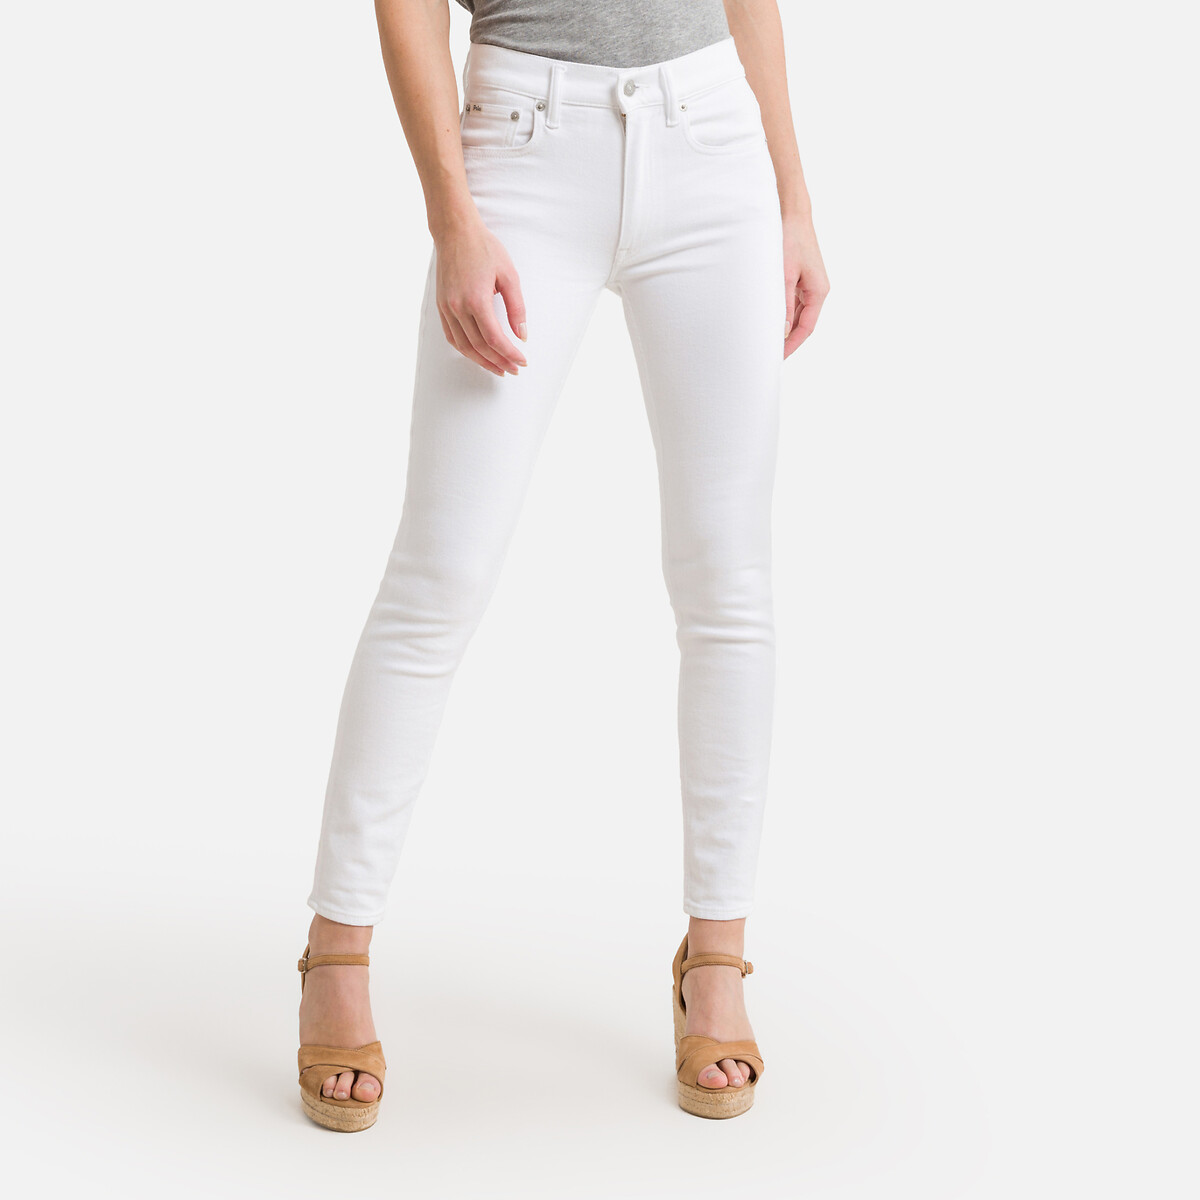 Джинсы скинни 30 (US) - 46 (RUS) белый джинсы скинни xs 30 серый